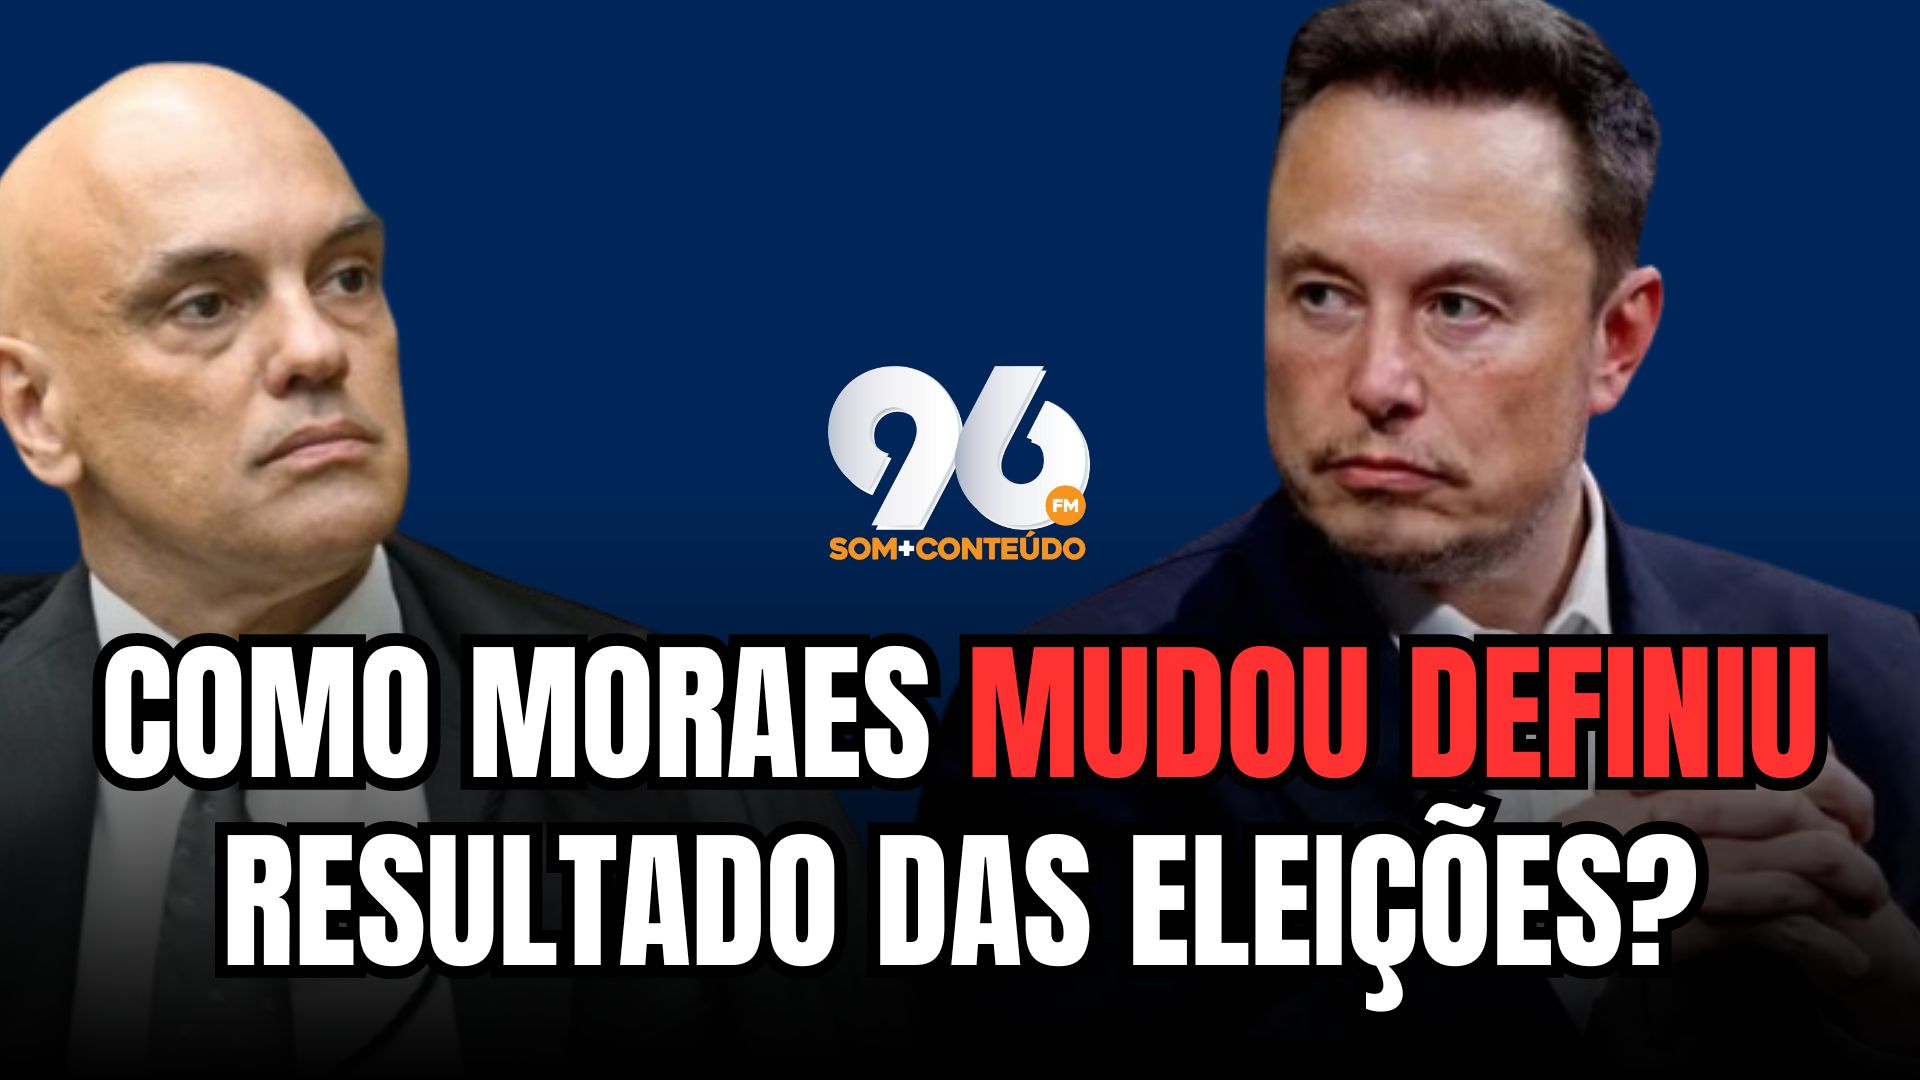 [VIDEO] Entenda como Alexandre de Moraes pode ter definido resultado das eleições no Brasil